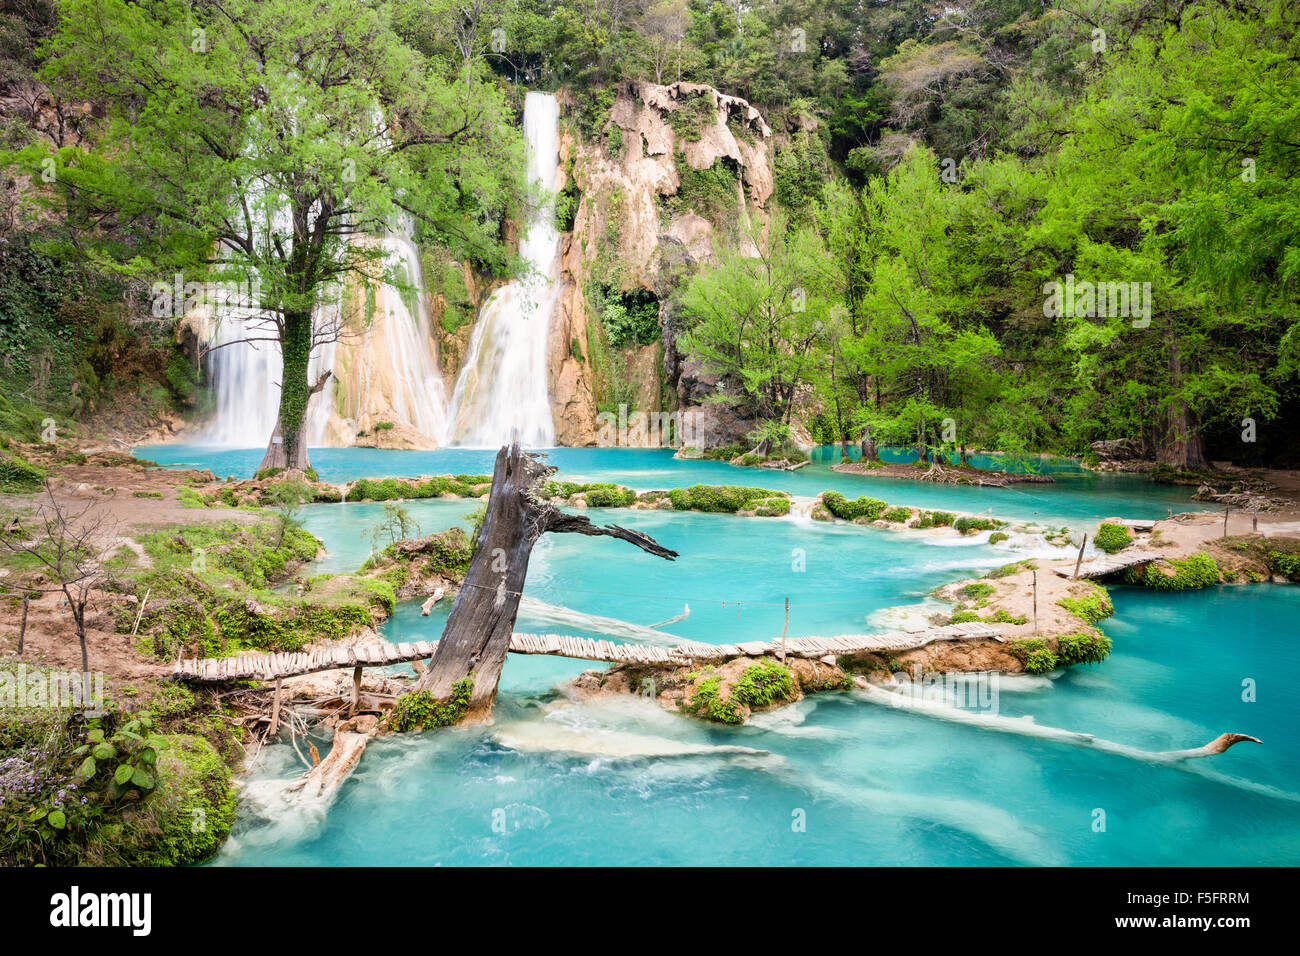 Azure water flows beneath the Minas Viejas Falls in San Luis Potosi, Mexico. Stock Photo